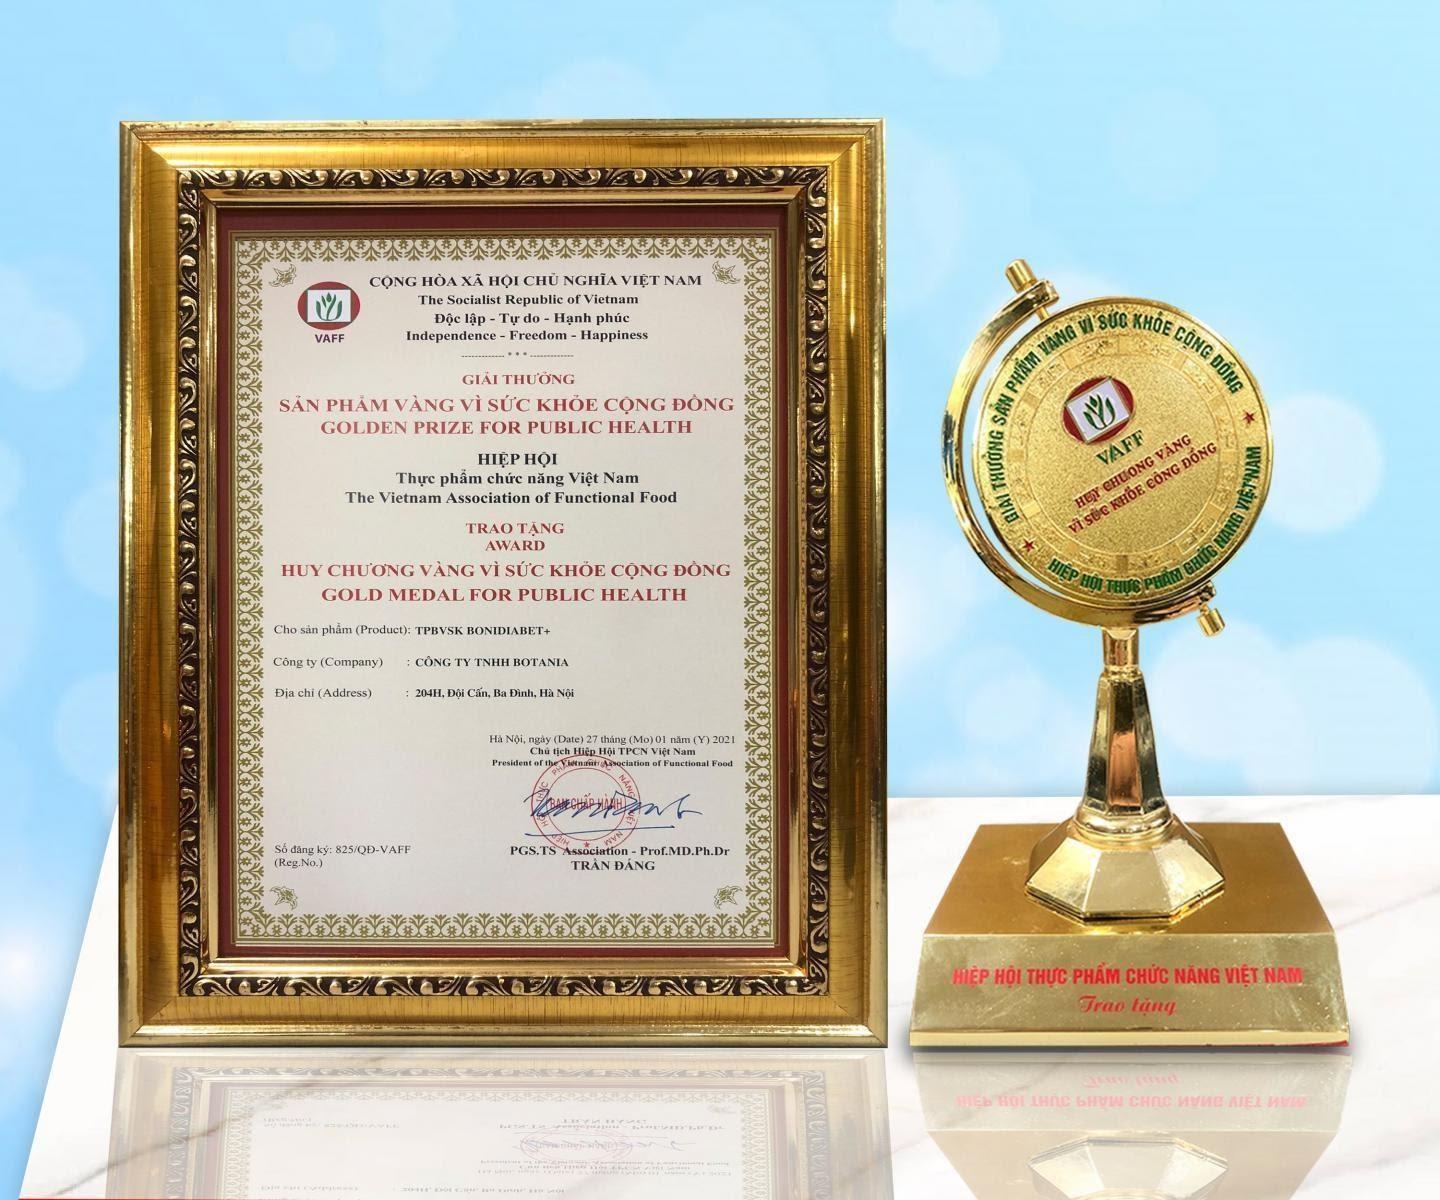 Giải thưởng “Huy chương vàng vì sức khỏe cộng đồng” của công ty Botania.